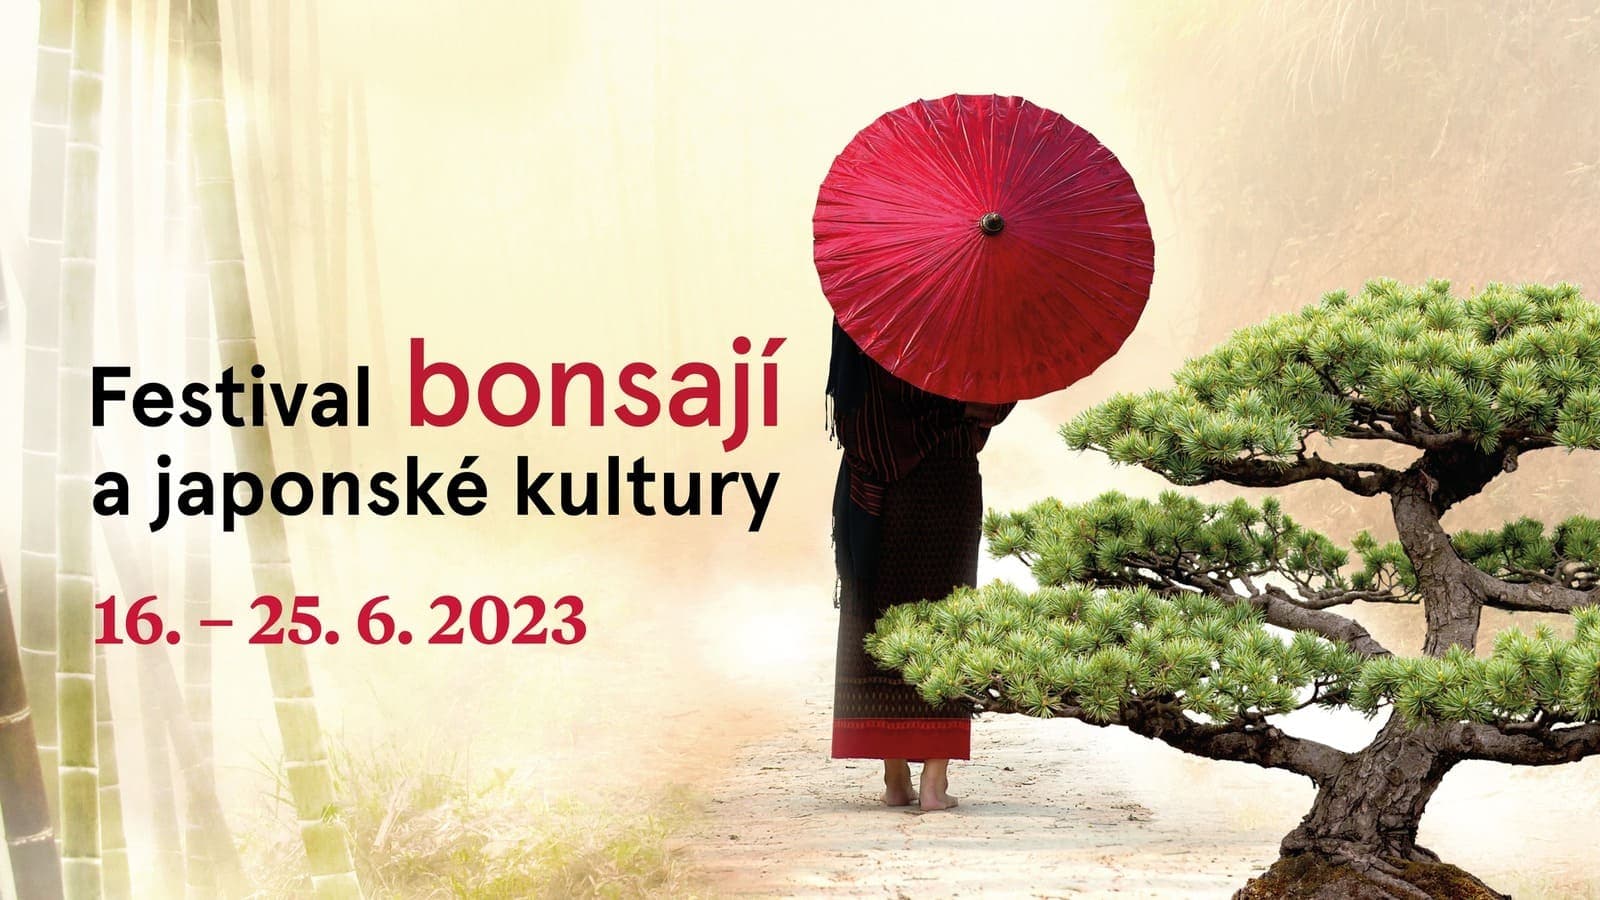 С 16 по 25 июня в Ботаническом саду в Праге пройдет фестиваль бонсай и японской культуры